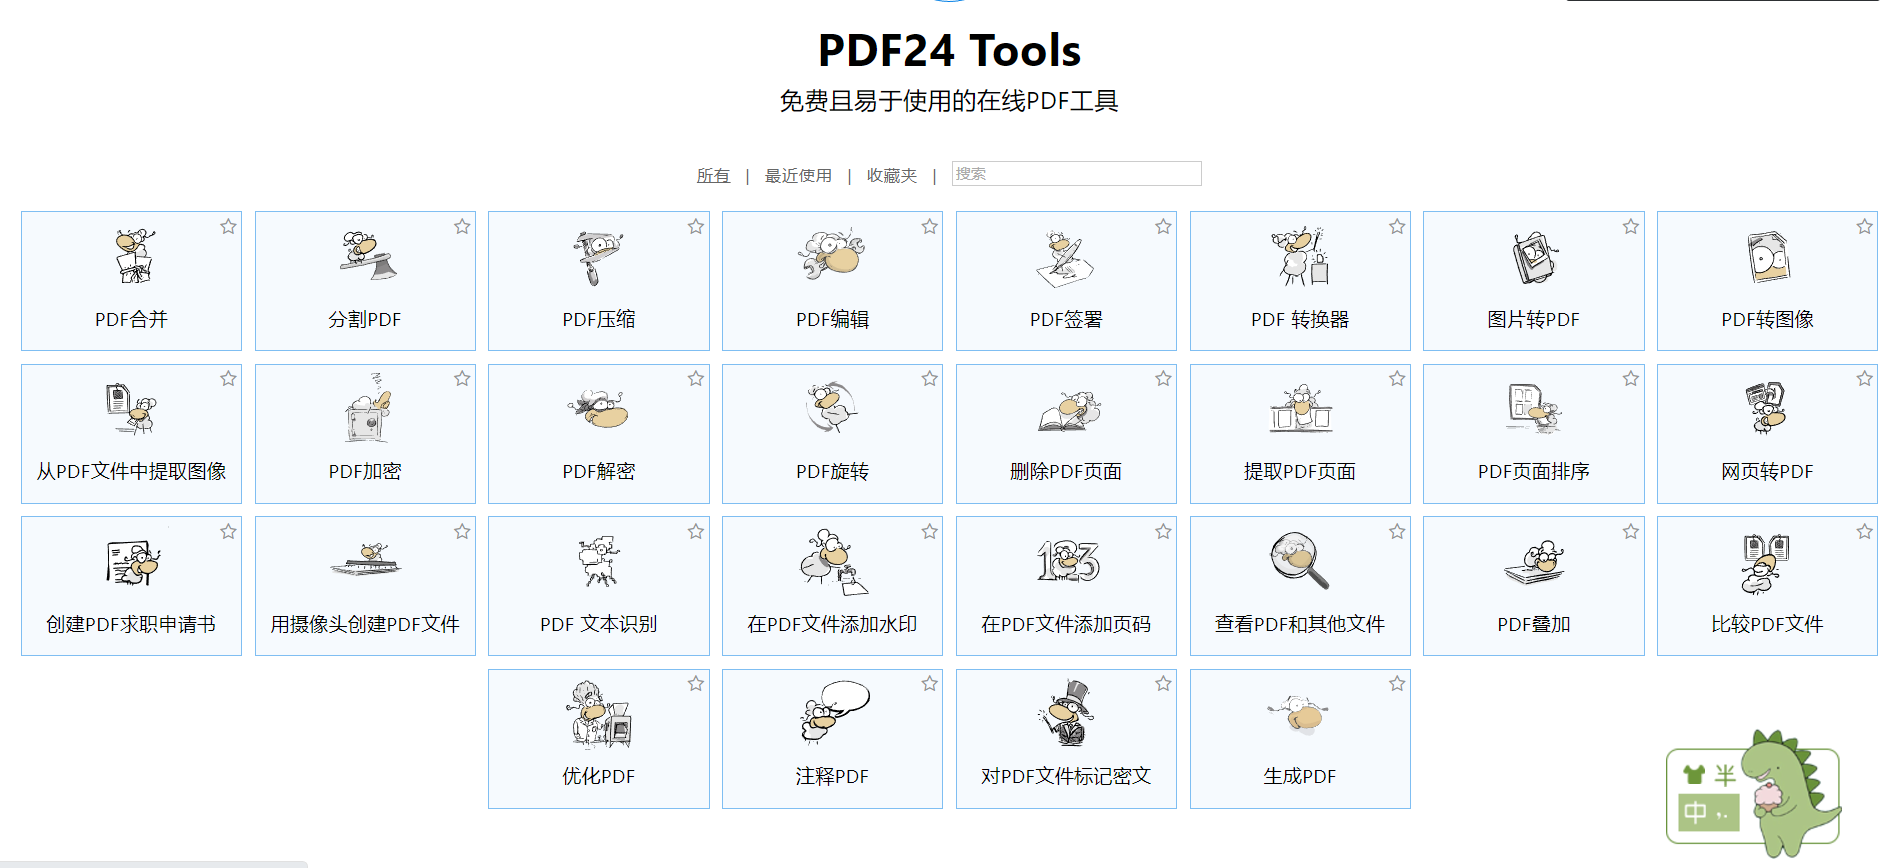 超好用的PDF处理软件PDF24 工具箱 v11.2.0最新7.6